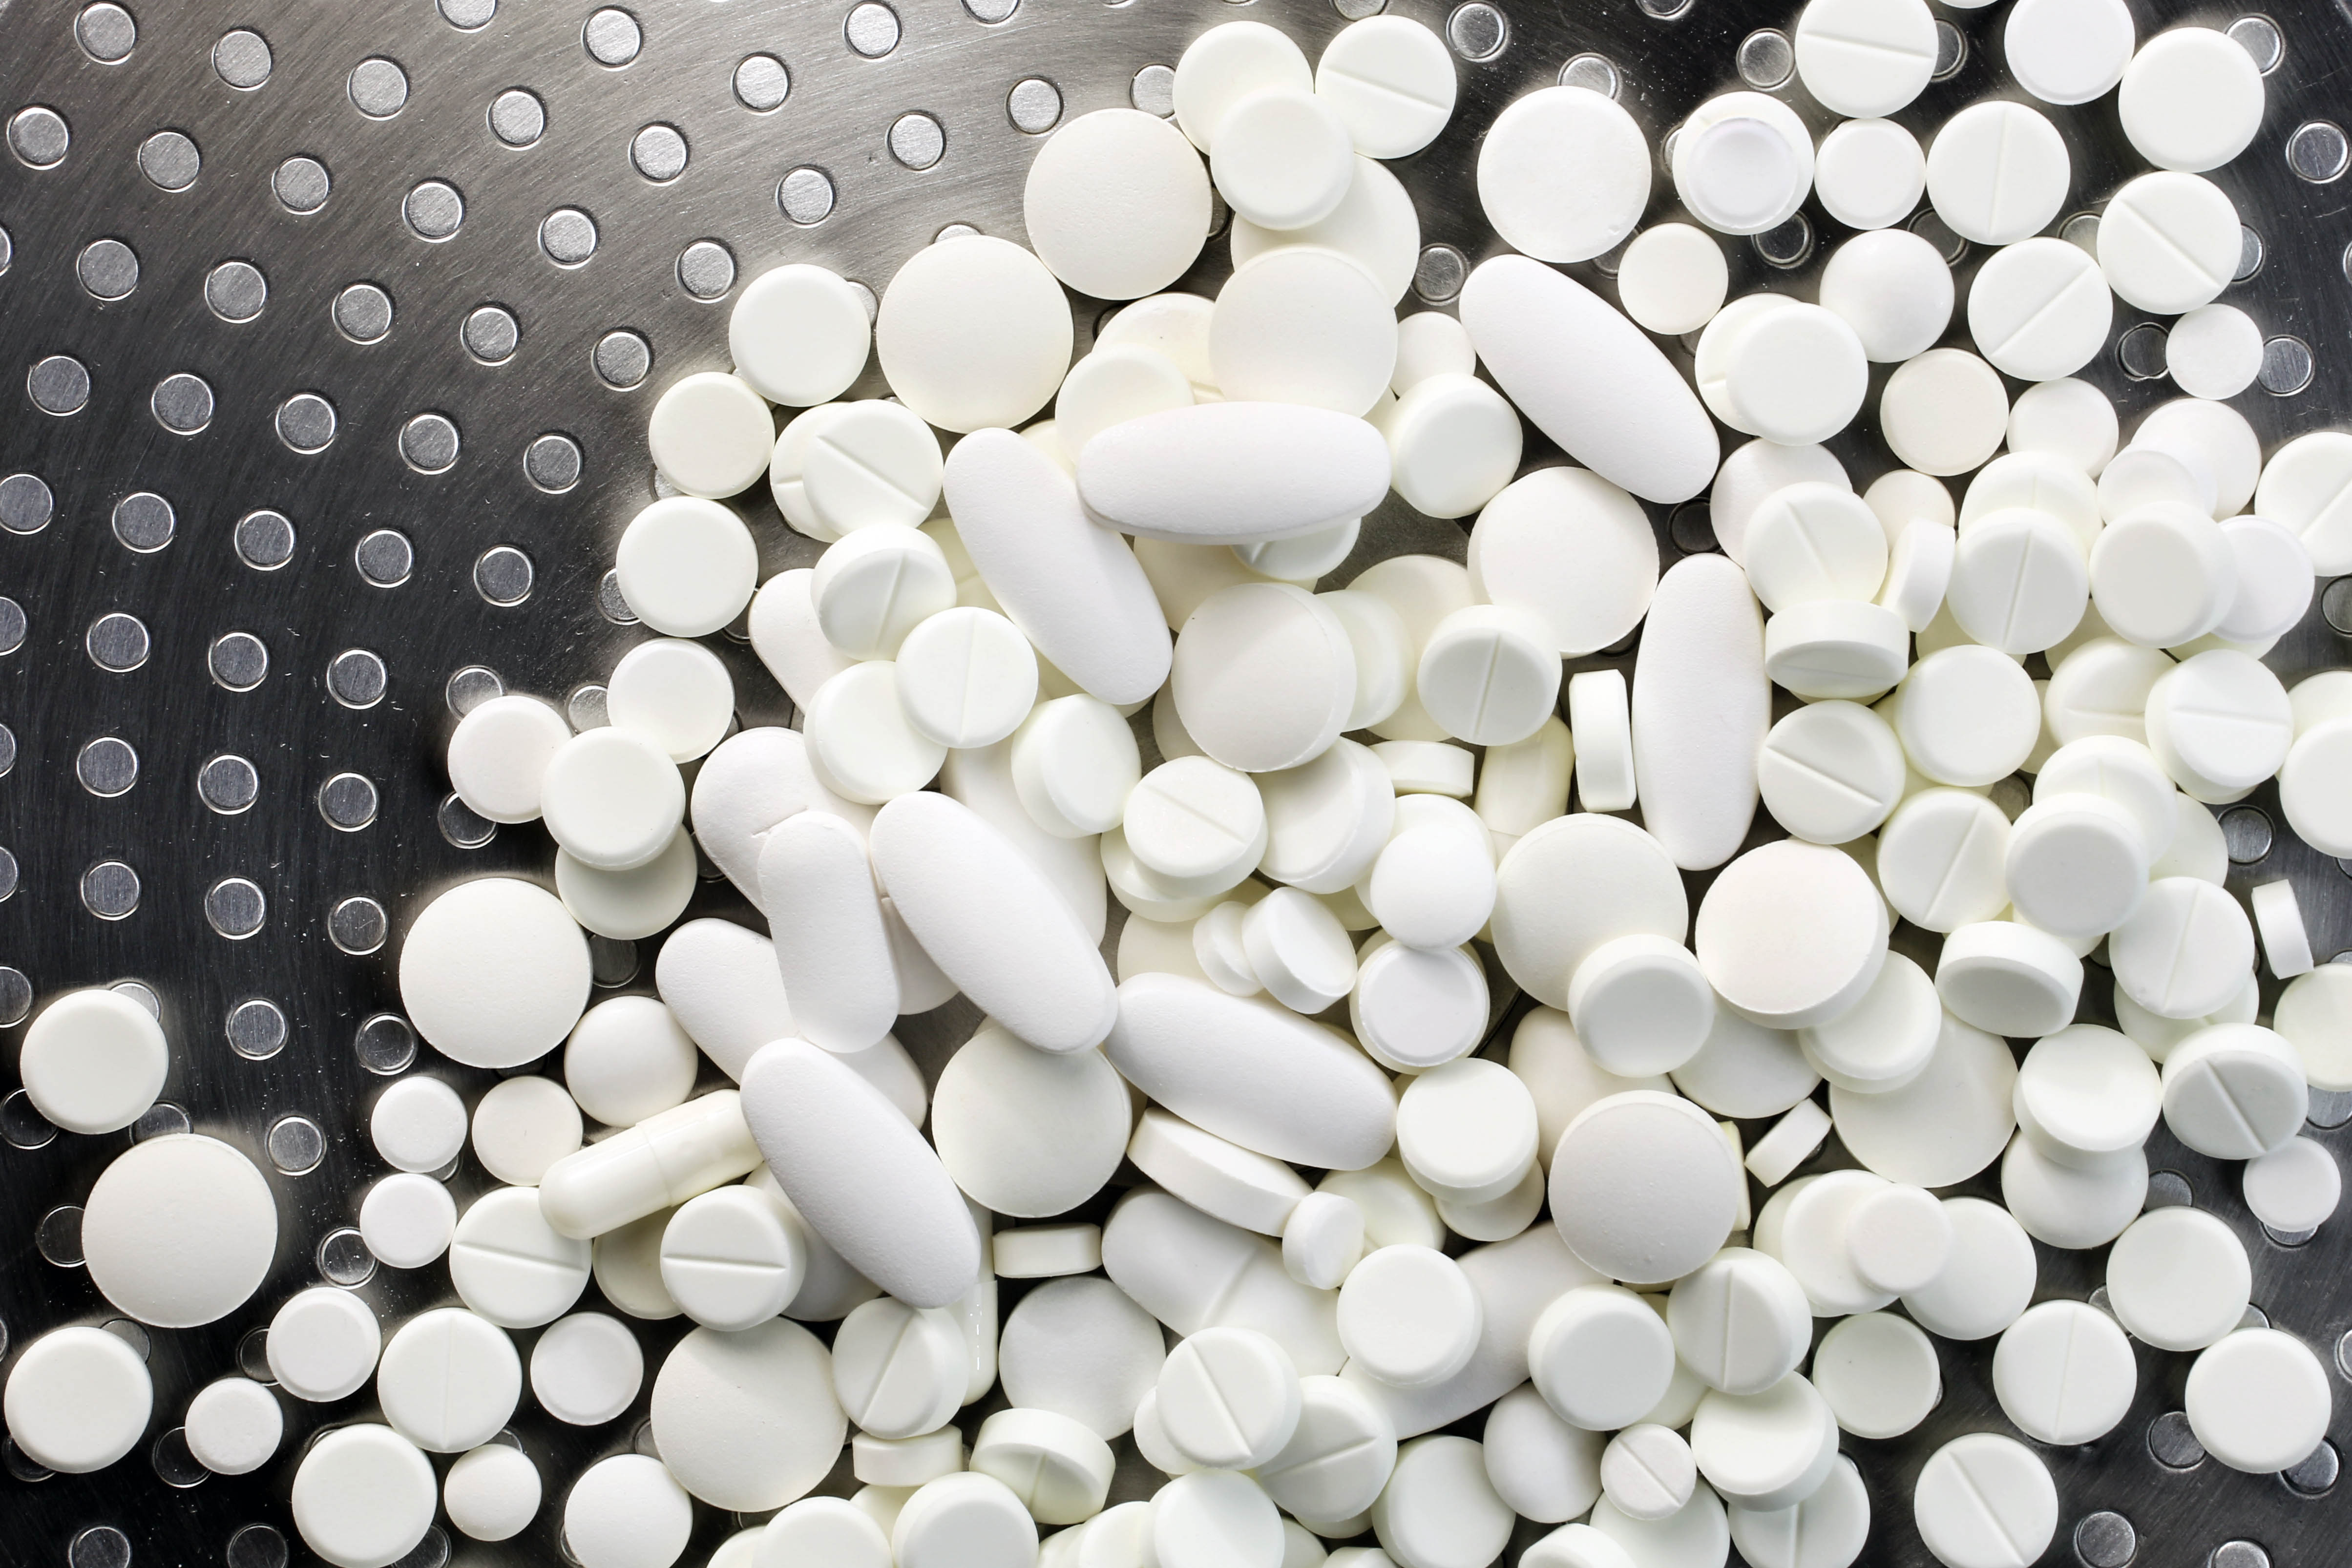 Prescription drug tablets on a black surface